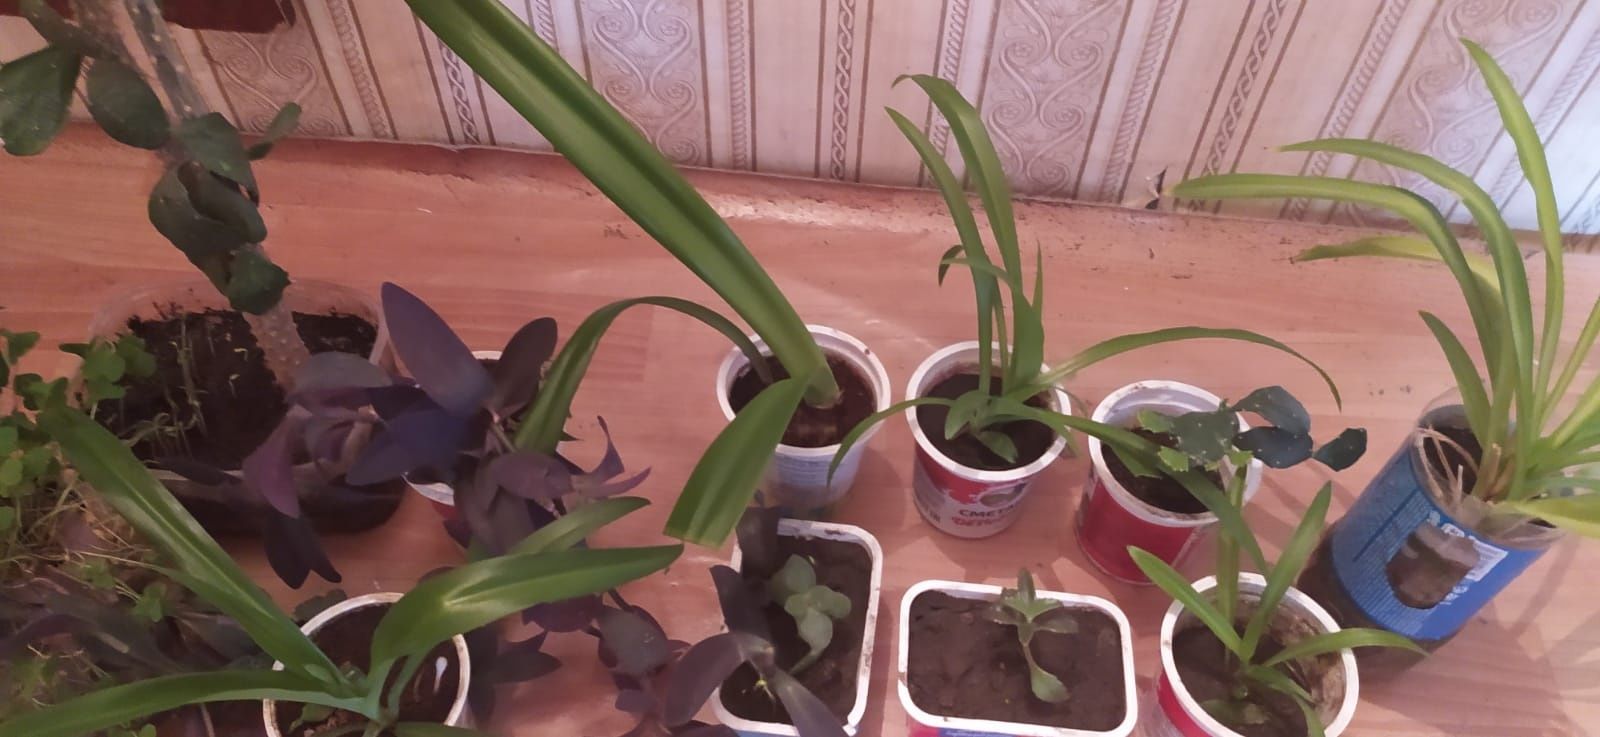 Продам комнатные растения по 200 тенге